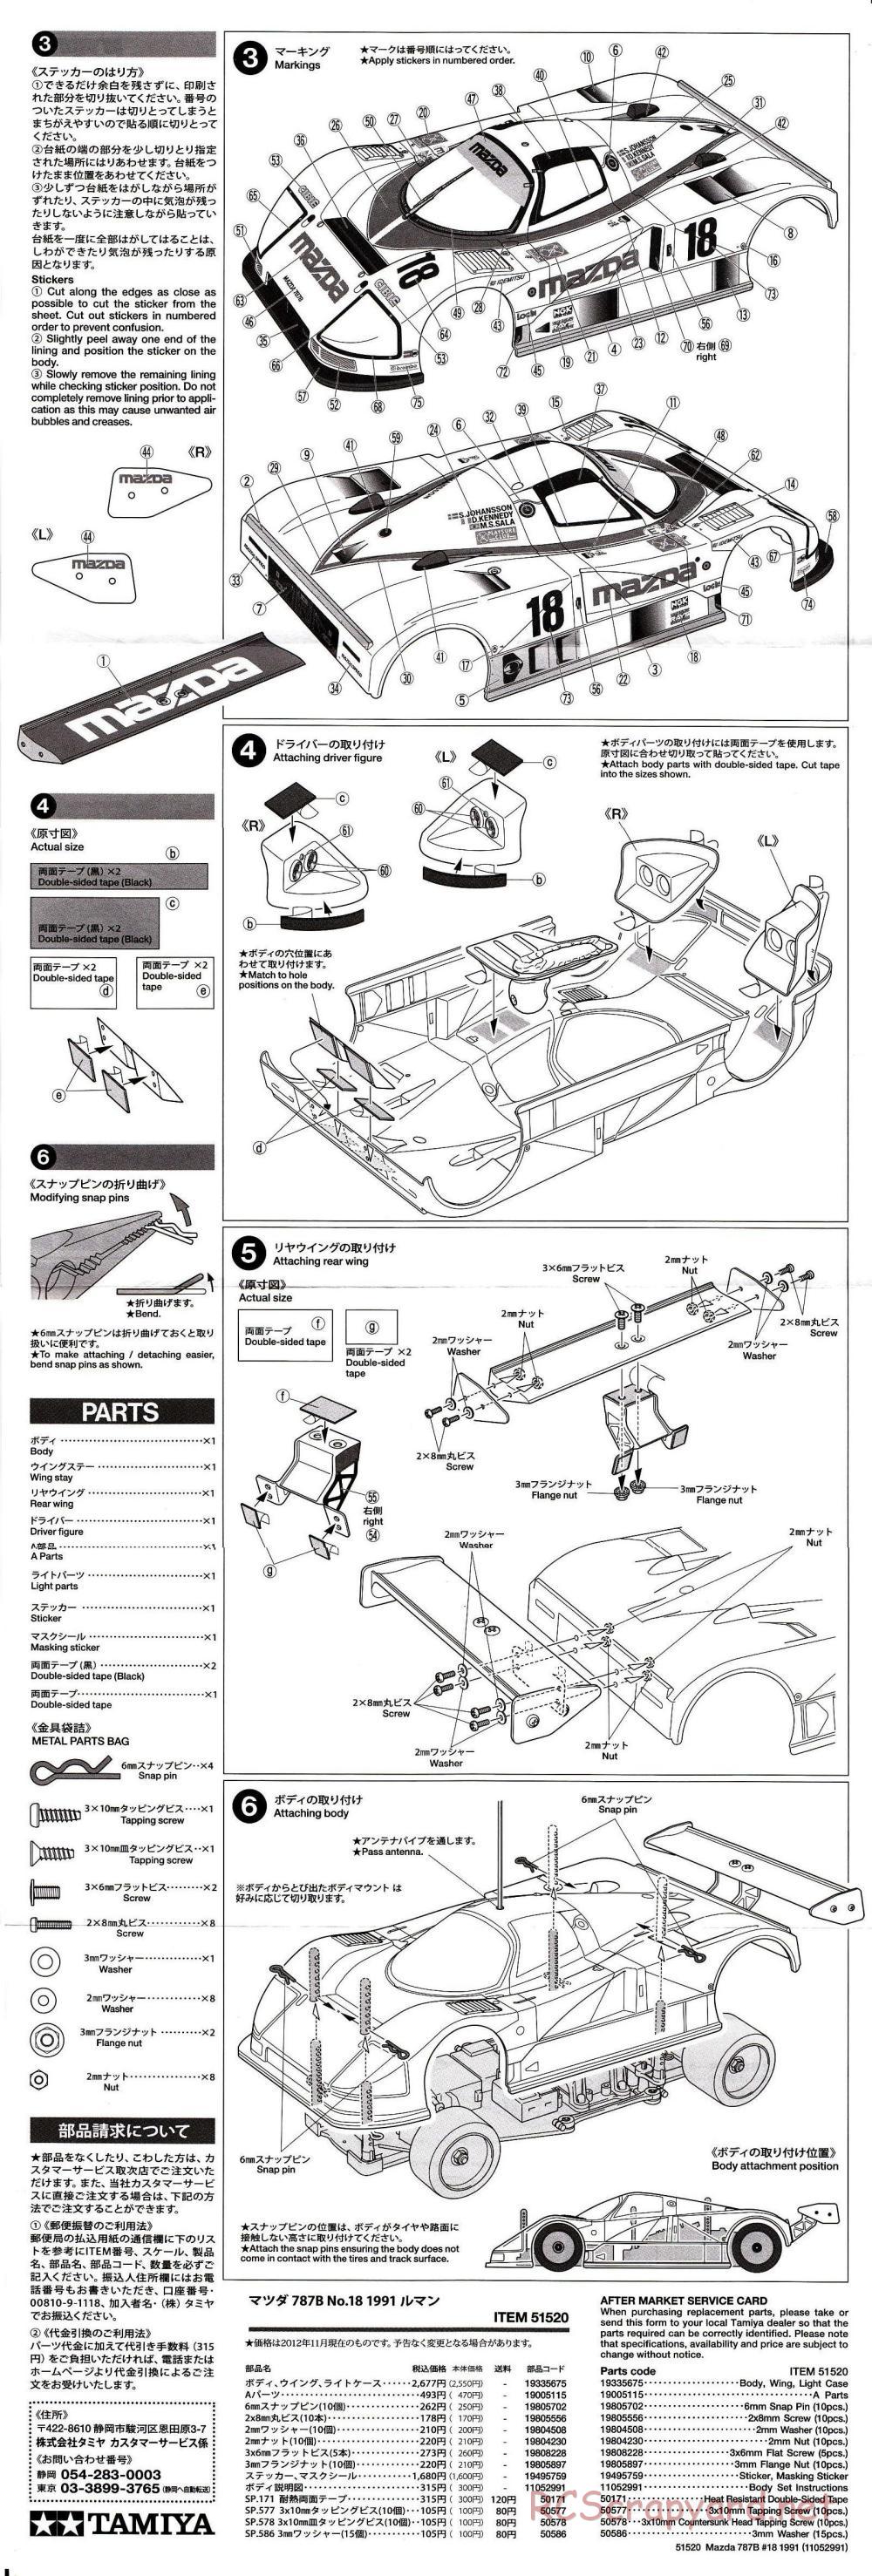 Tamiya - Mazda 787B No.18 Le-Mans 1991 - RM-01 Chassis - Body Manual - Page 2